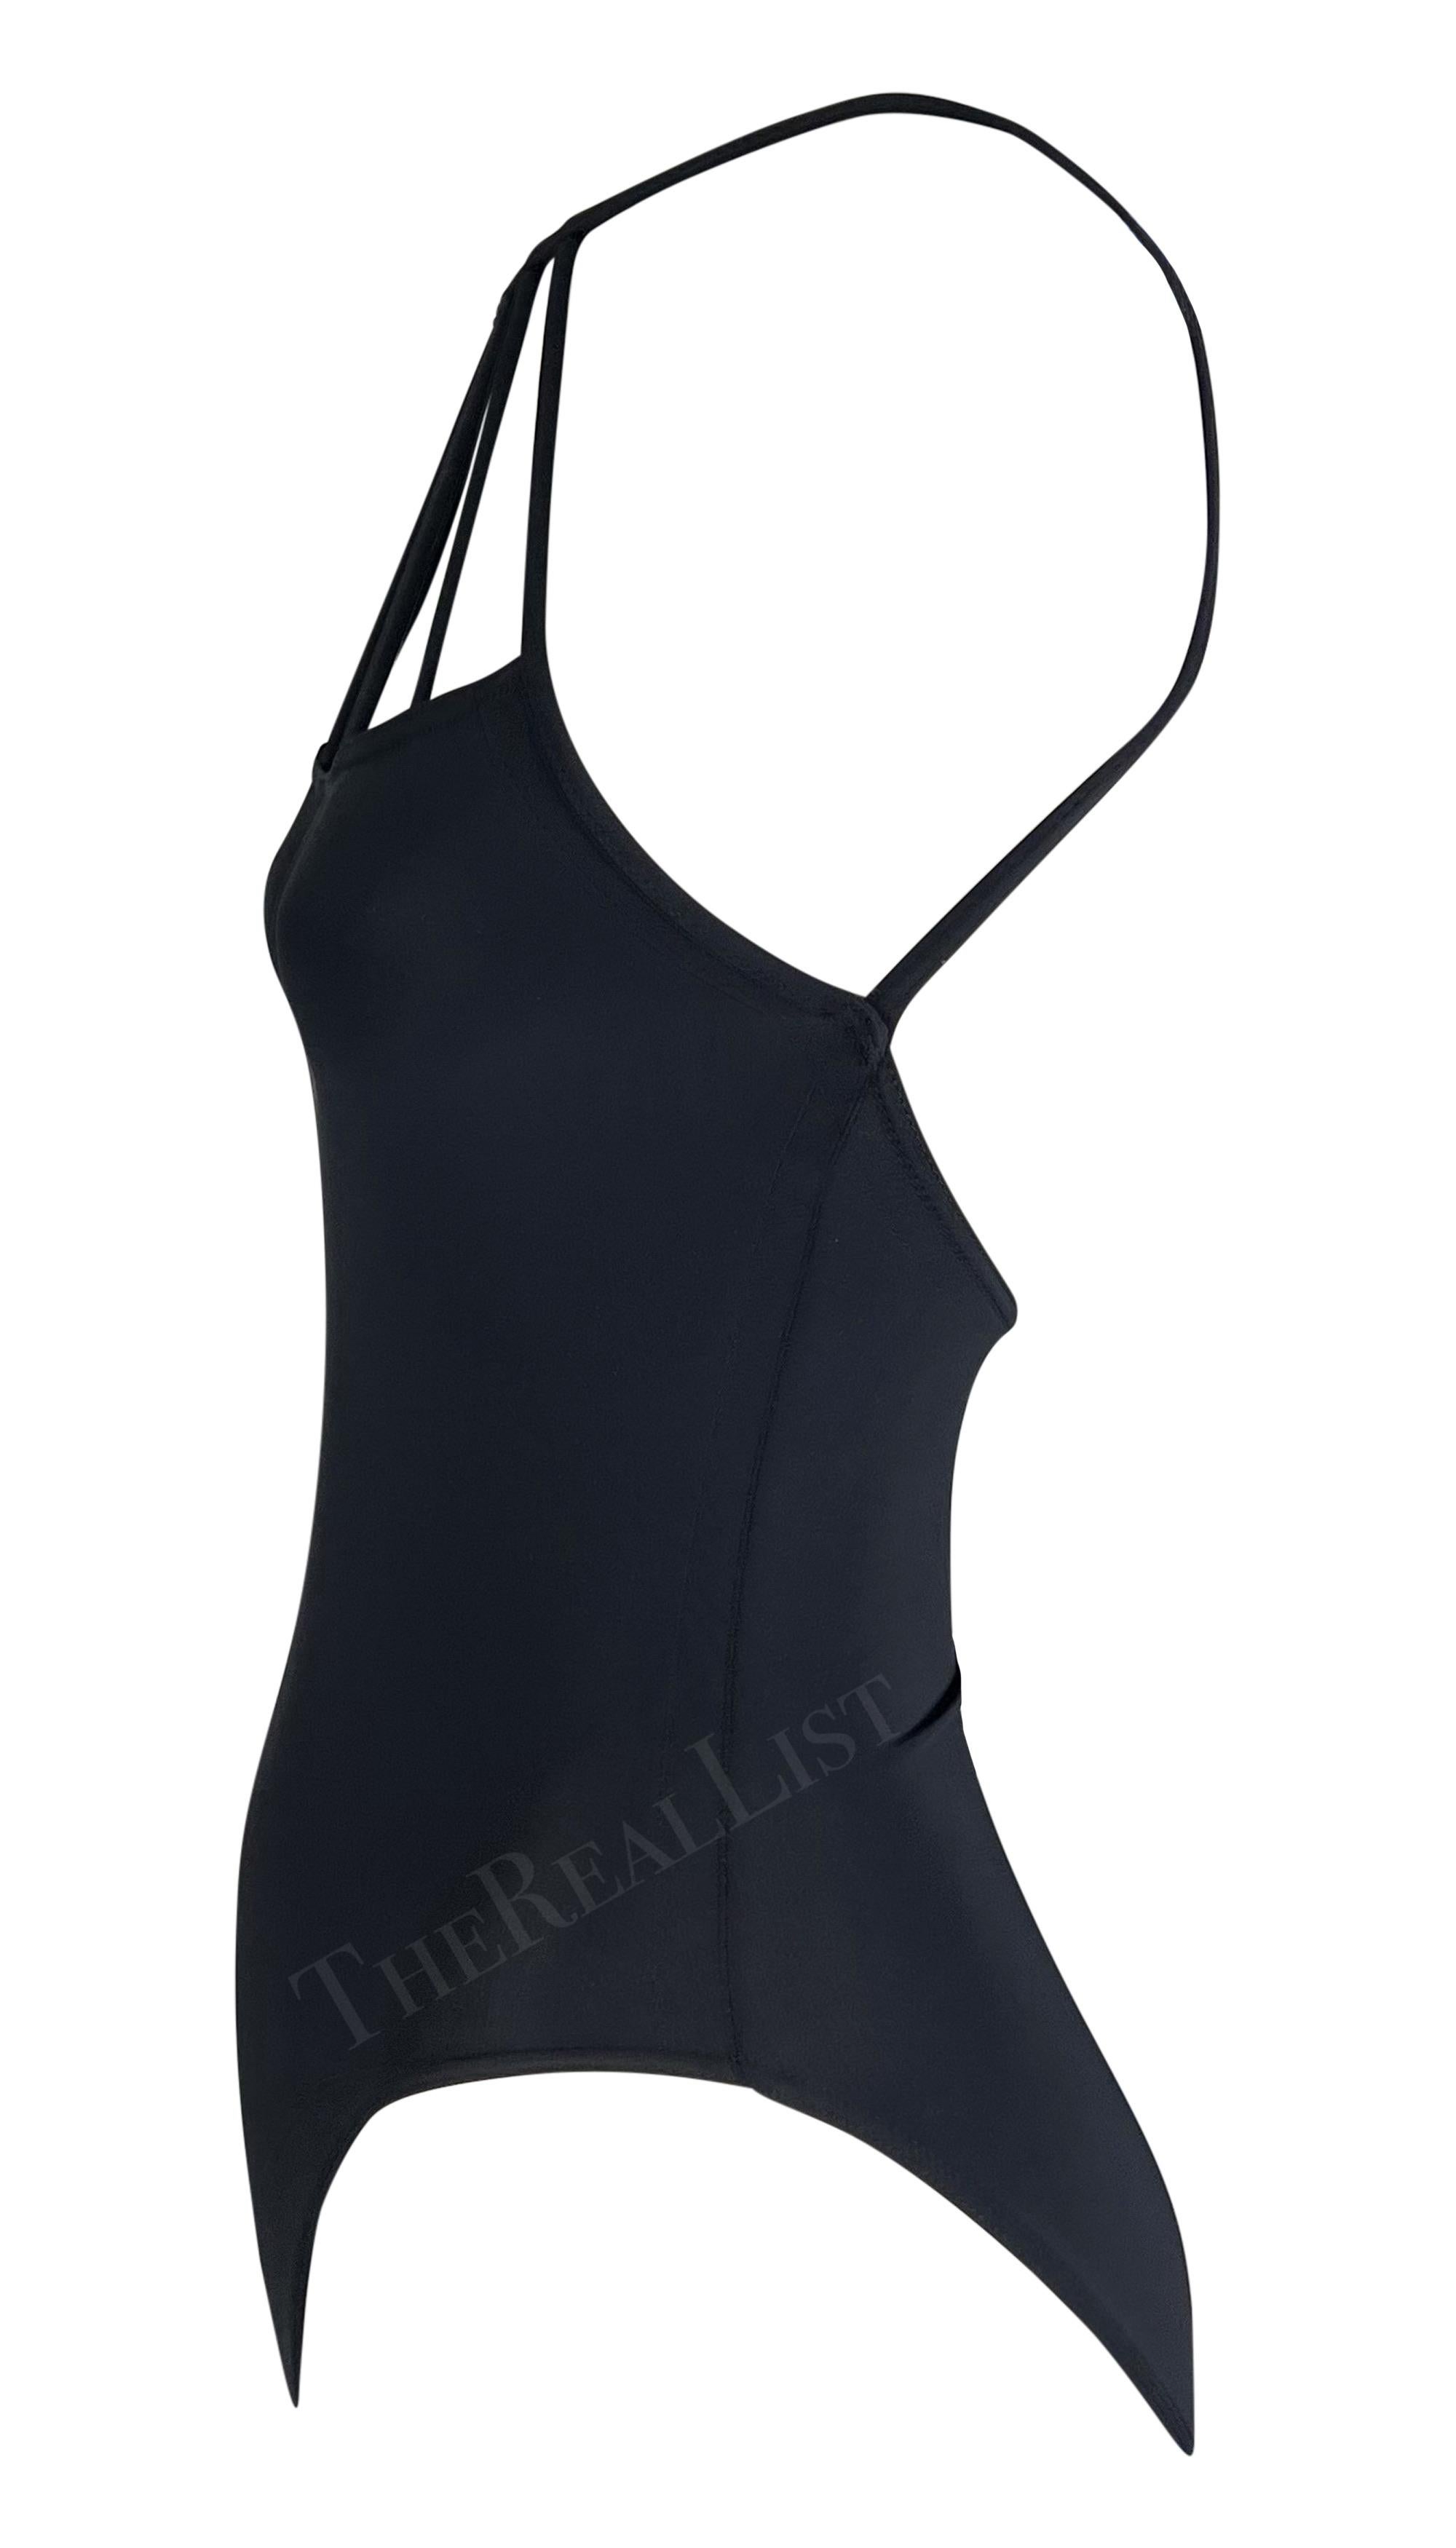 S/S 1998 Herve Leger Black One Piece Body Suit Swimsuit Bodysuit For Sale 1